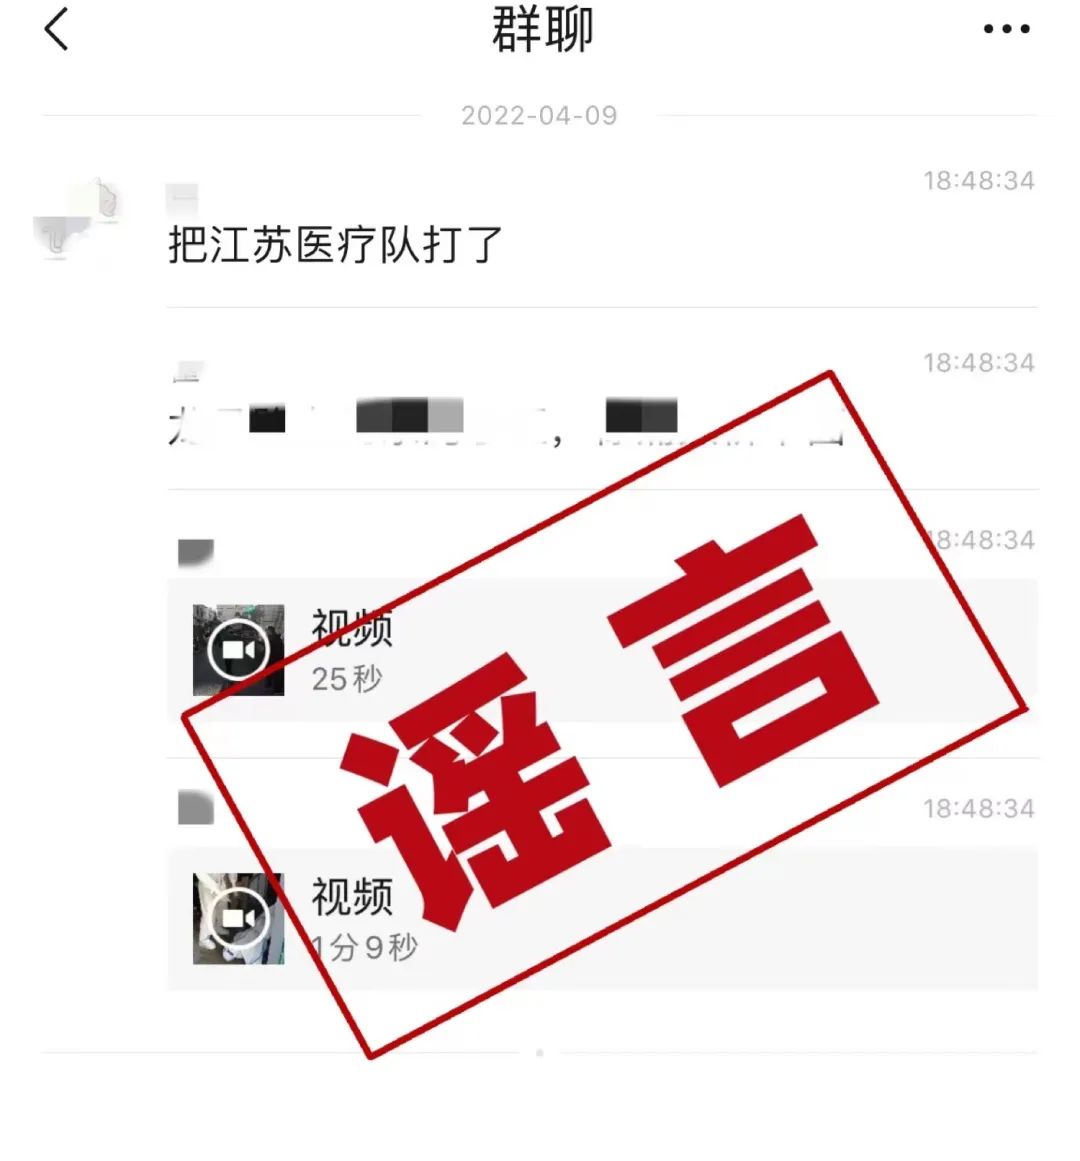 上海警方：“小区业主殴打江苏医疗队队员”为误传 系居委干部调解纠纷被撞倒